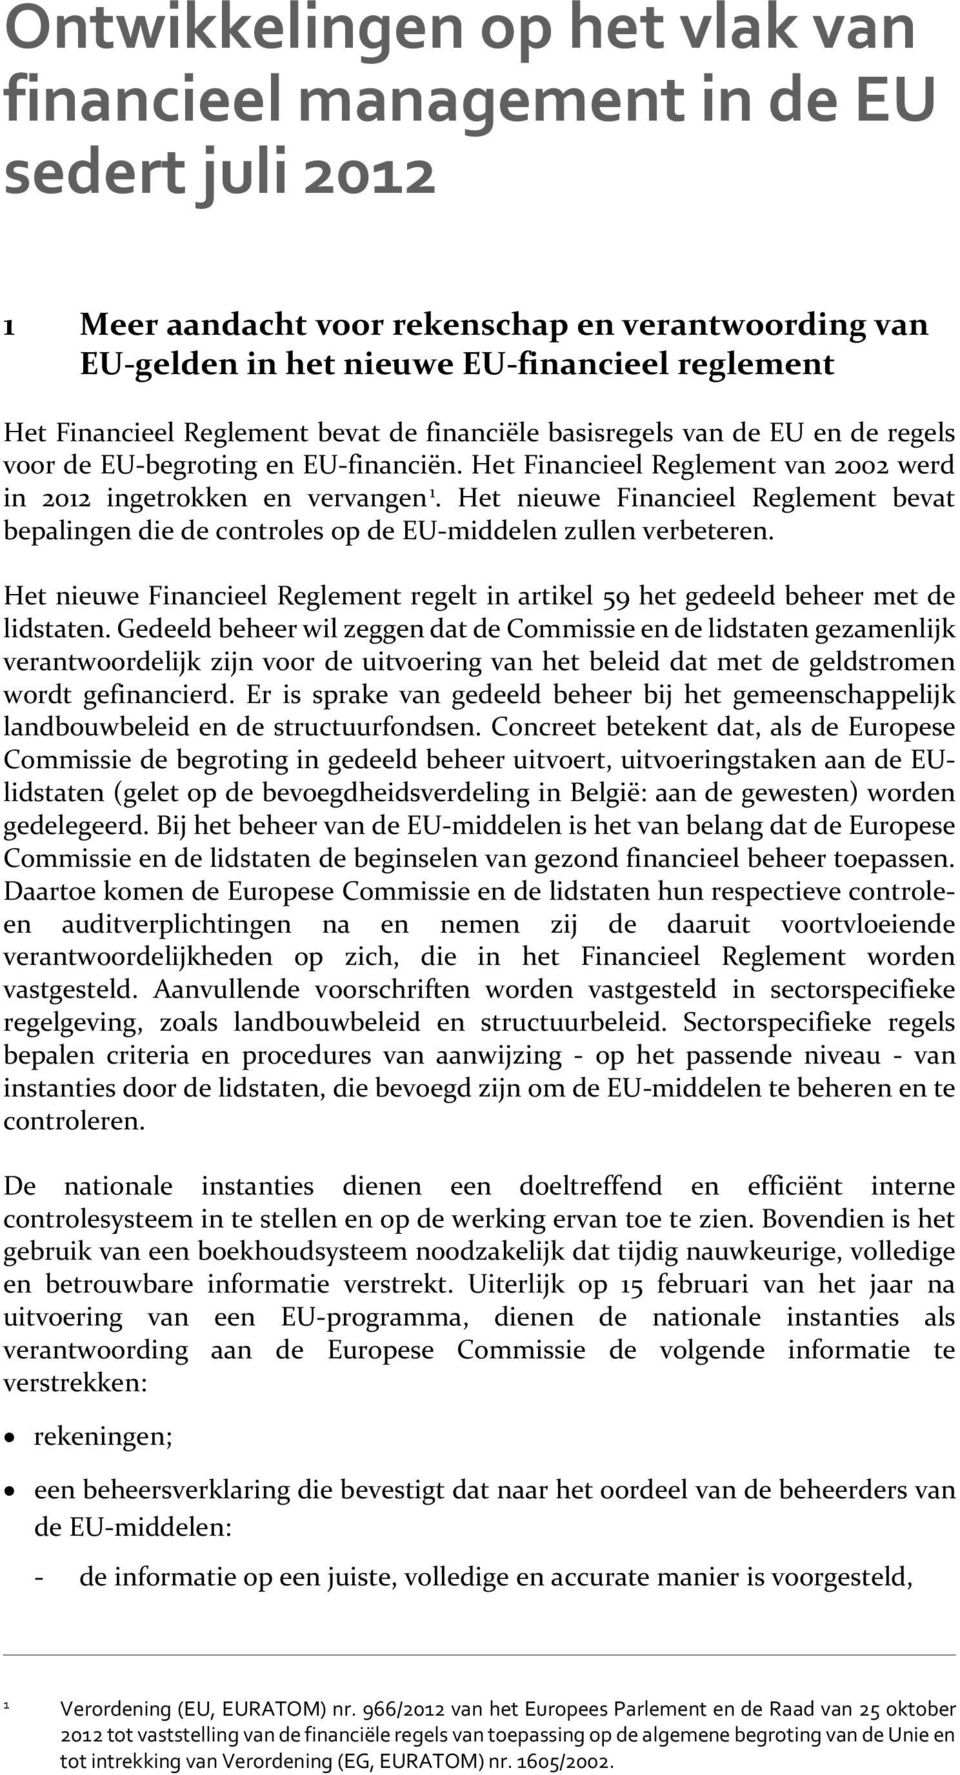 Het nieuwe Financieel Reglement bevat bepalingen die de controles op de EU-middelen zullen verbeteren. Het nieuwe Financieel Reglement regelt in artikel 59 het gedeeld beheer met de lidstaten.